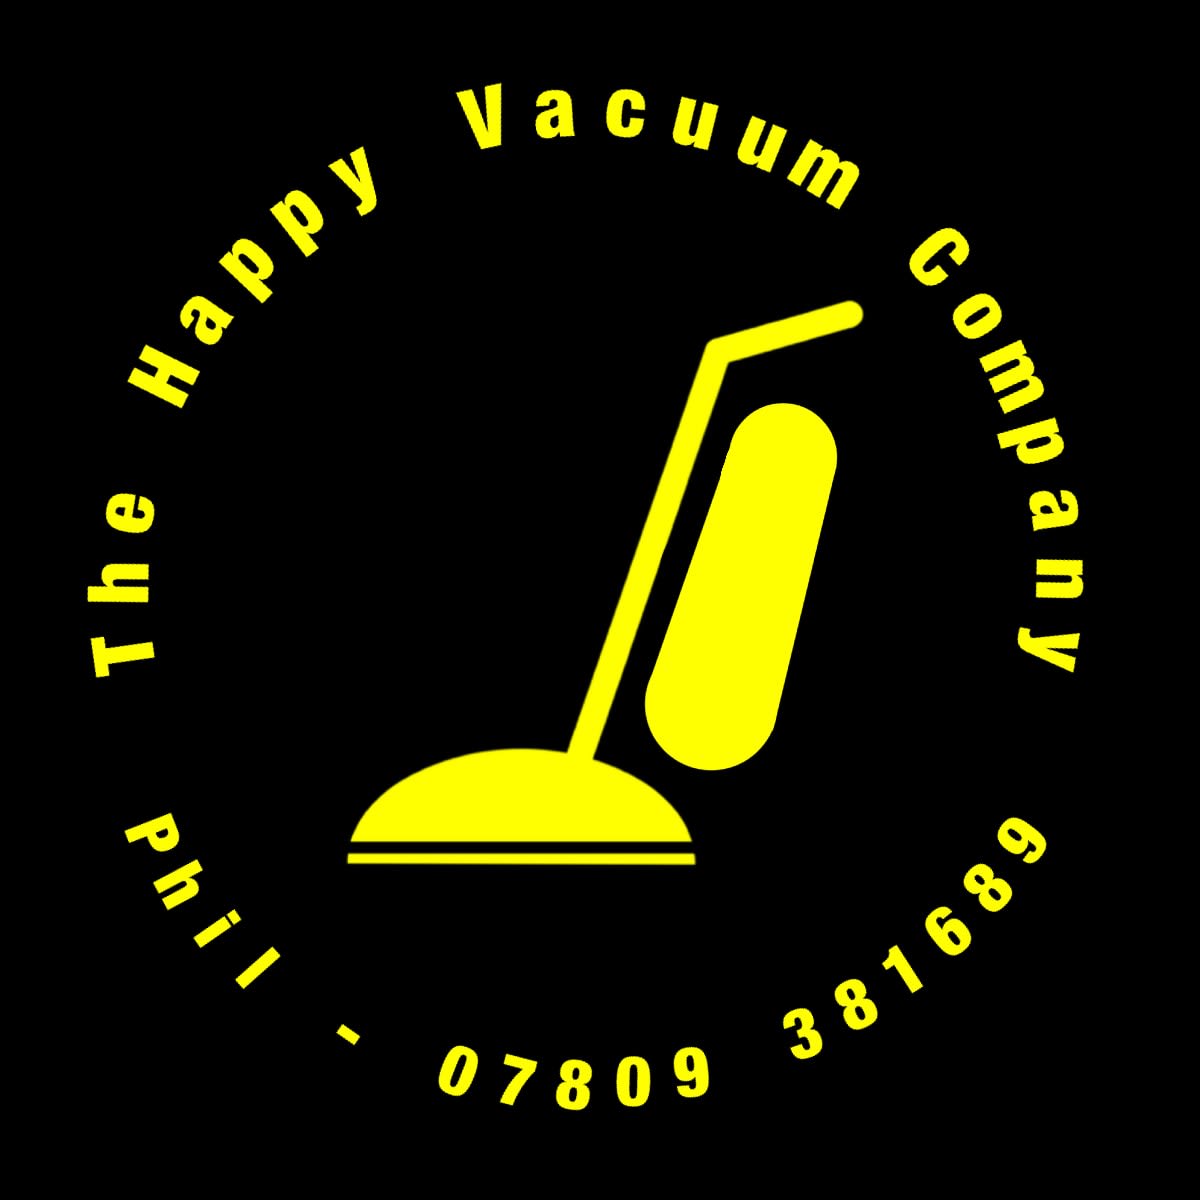 LOGO The Happy Vacuum Company Reading 07809 381689